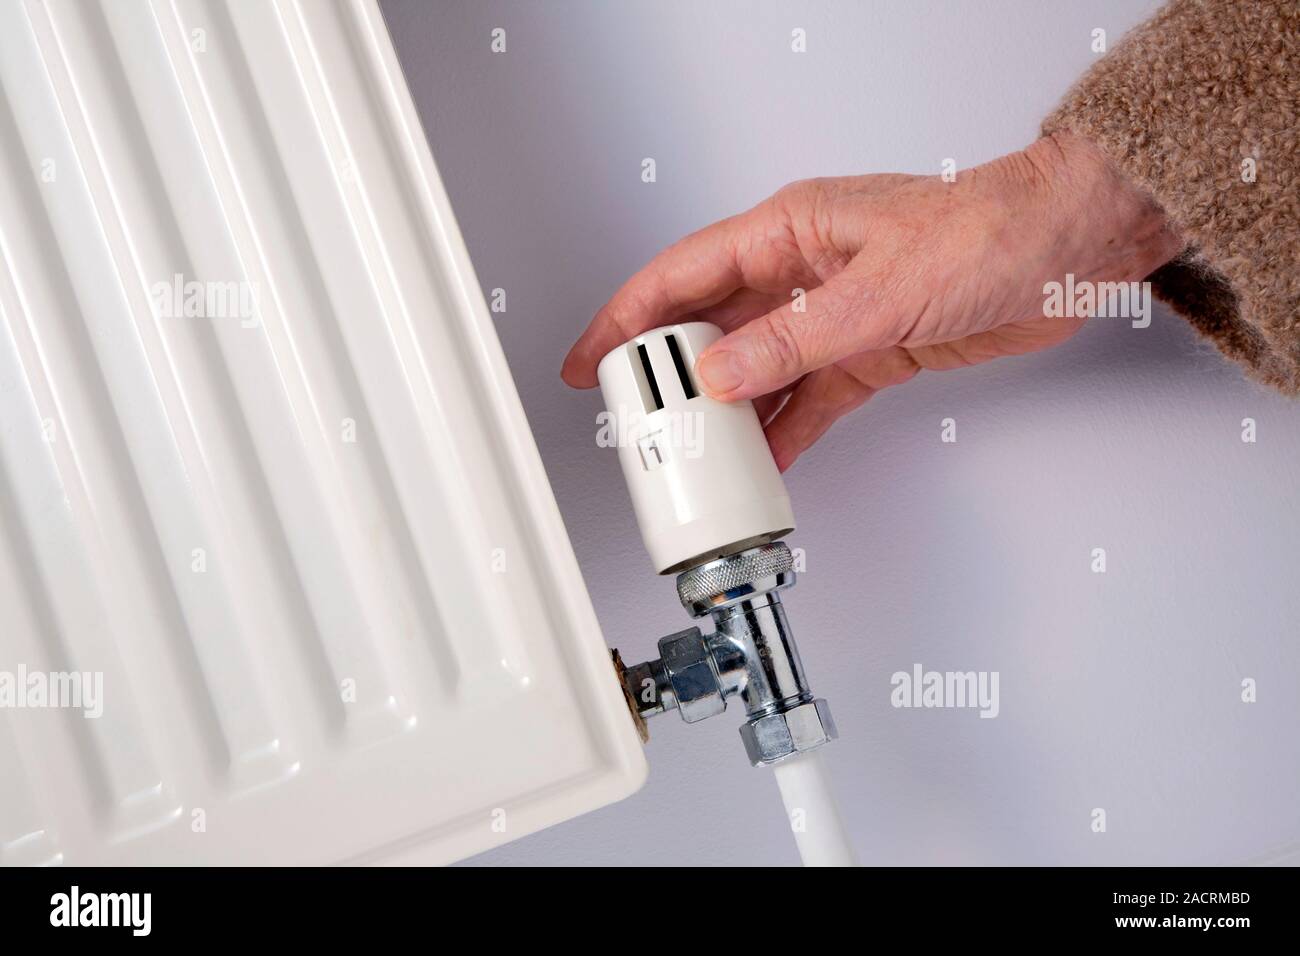 https://c8.alamy.com/compes/2acrmbd/ajuste-de-un-radiador-valvula-termostatica-trv-es-relativamente-sencillo-dispositivo-sin-calibrar-en-la-cual-el-flujo-de-agua-a-traves-de-un-radiador-varia-con-2acrmbd.jpg